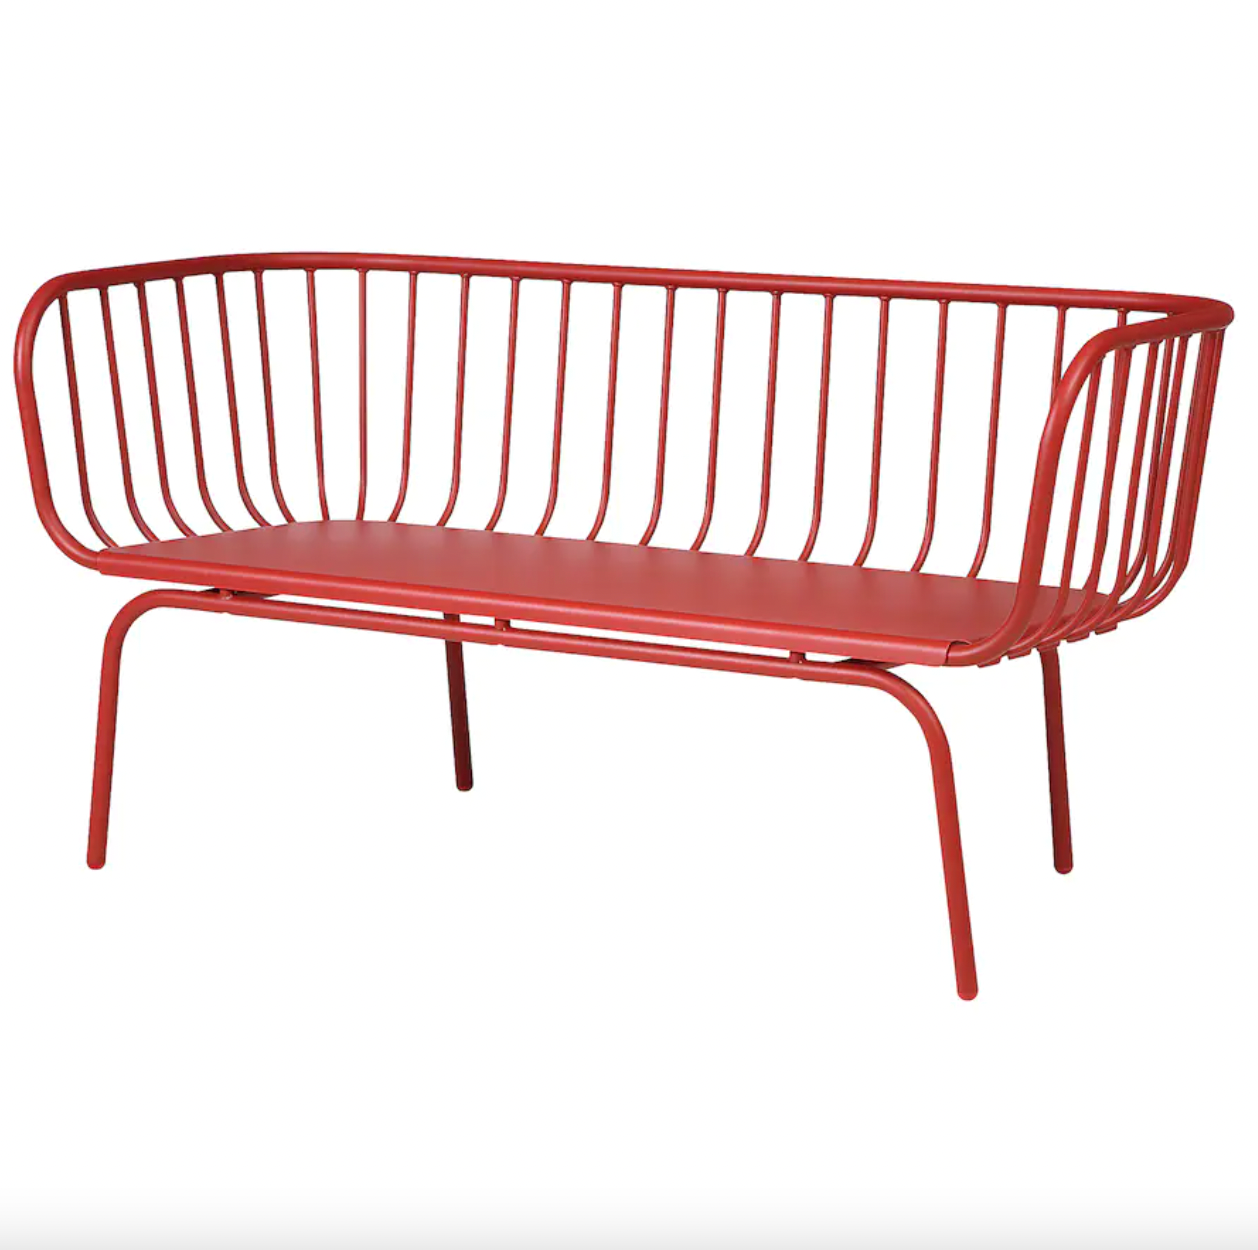 red steel outdoor bench